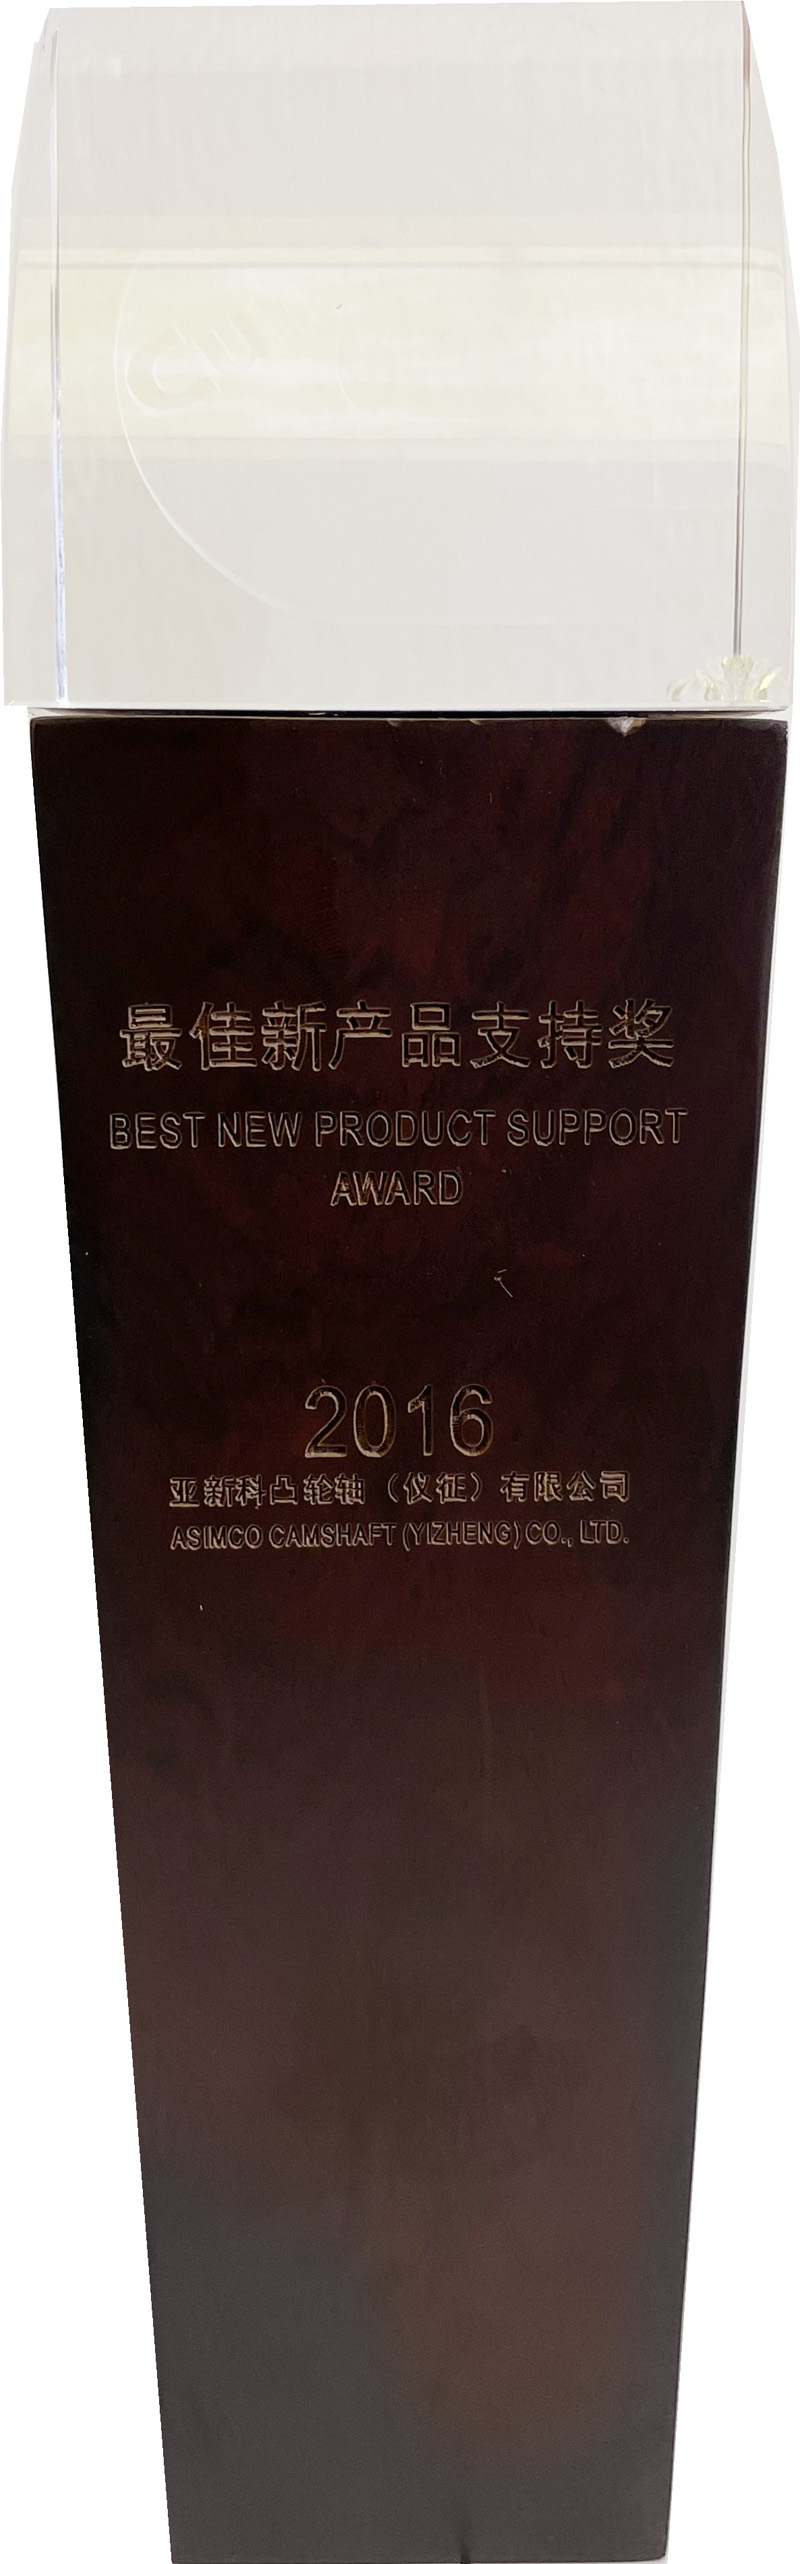 2016年最佳新产品支持奖